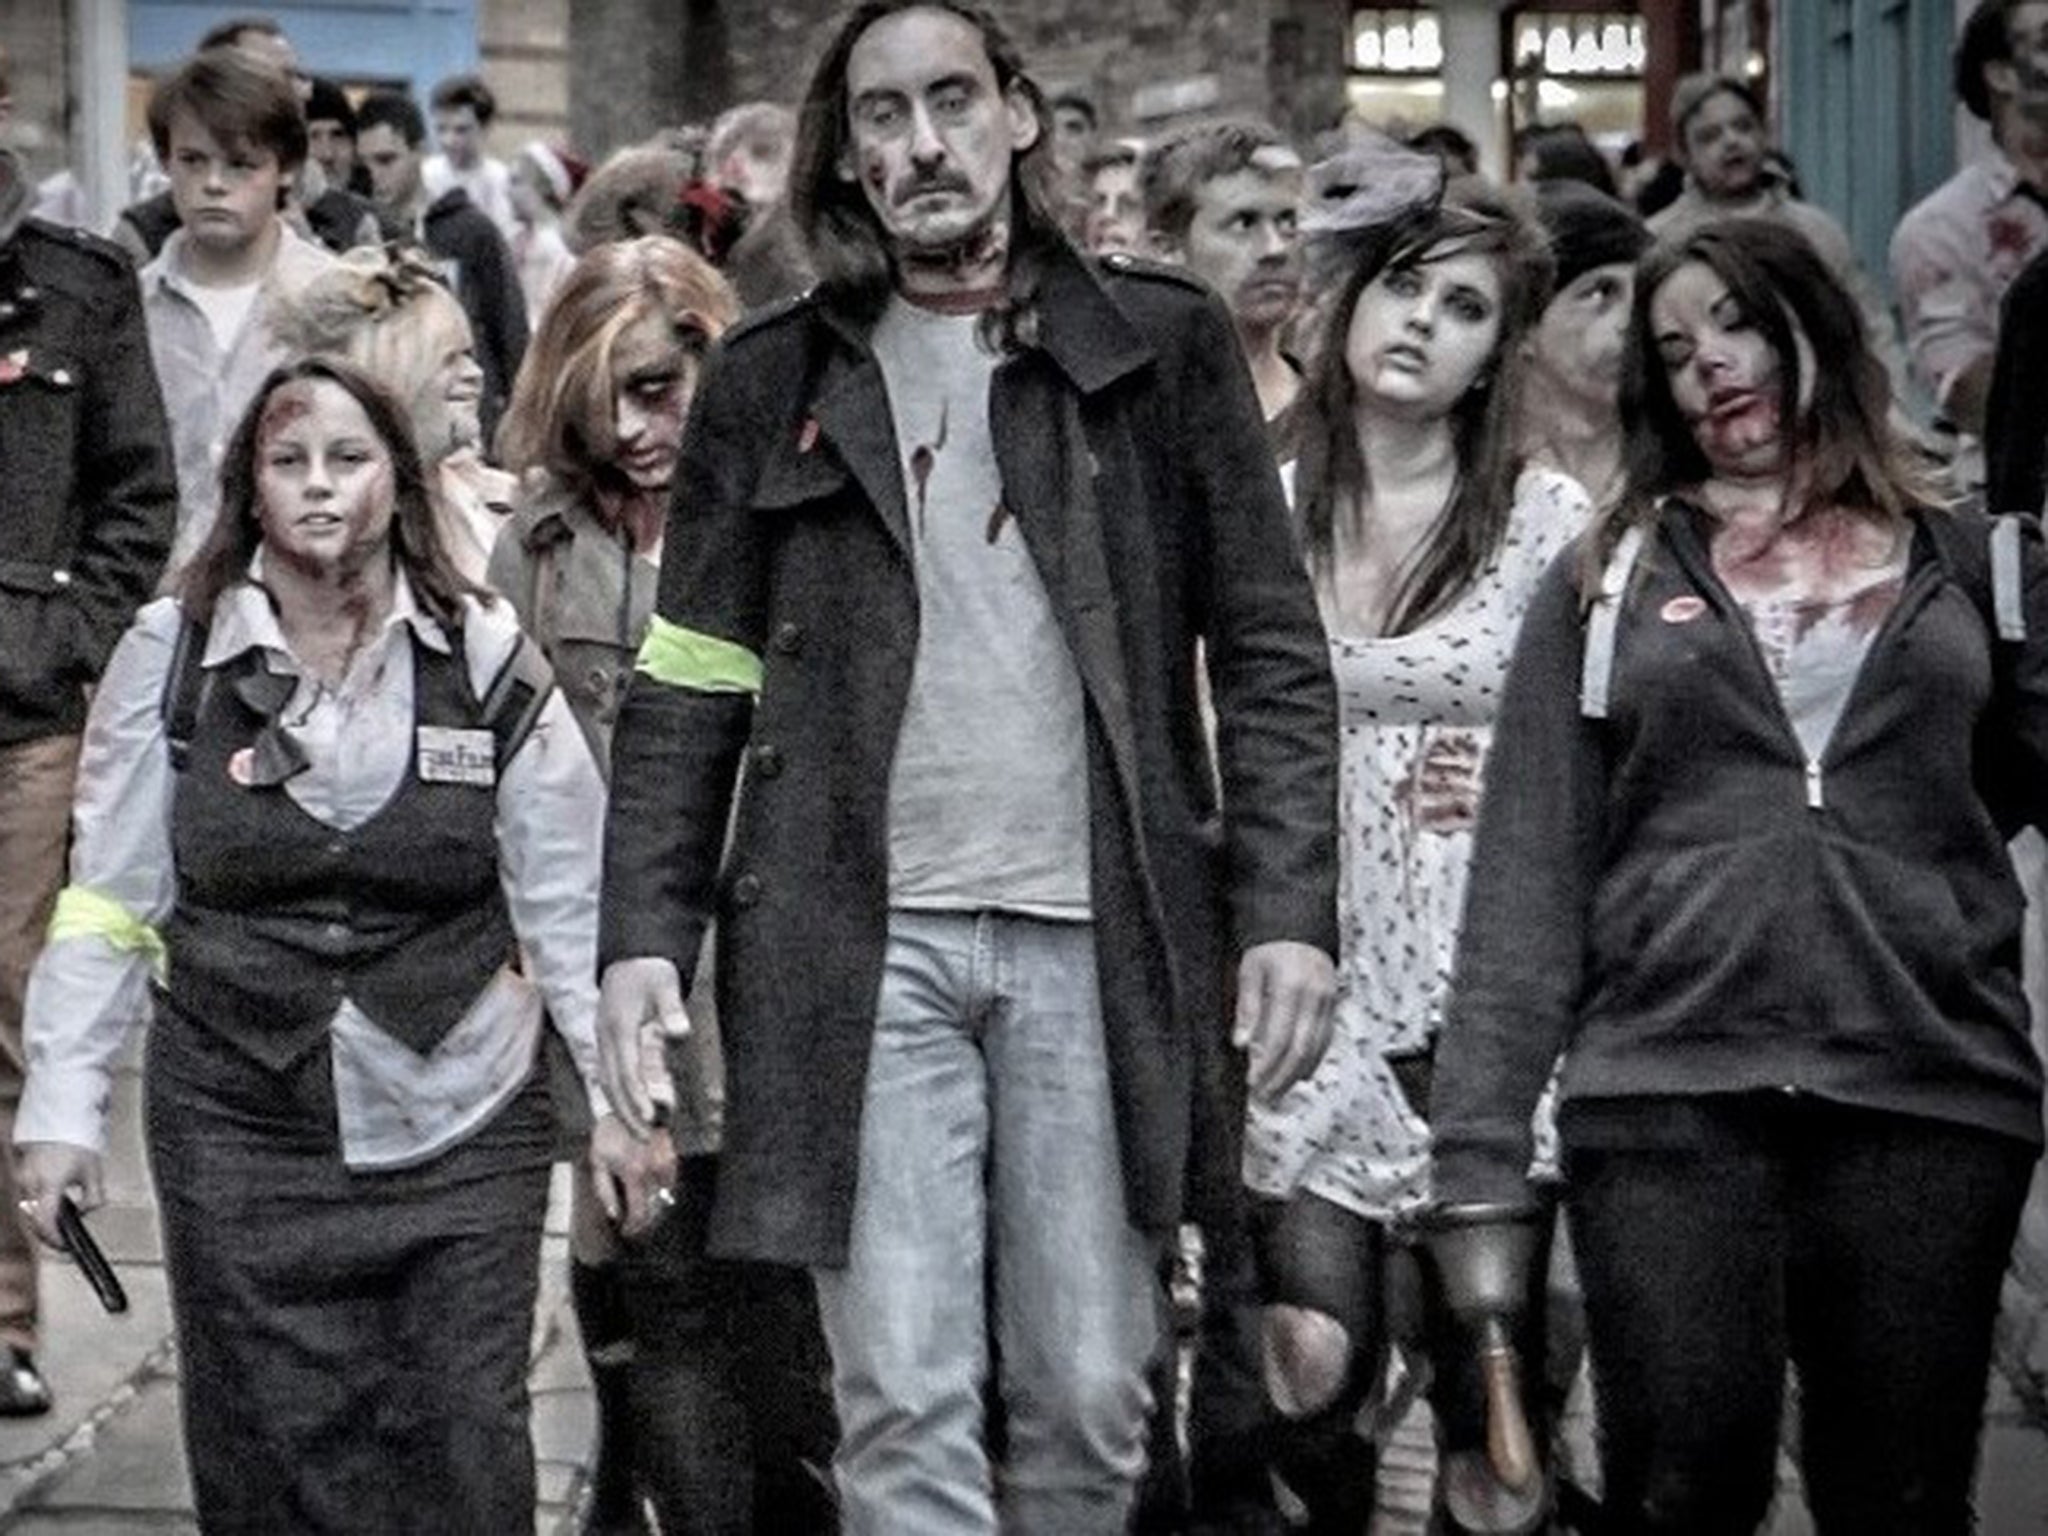 The Folkestone Zombie Walk